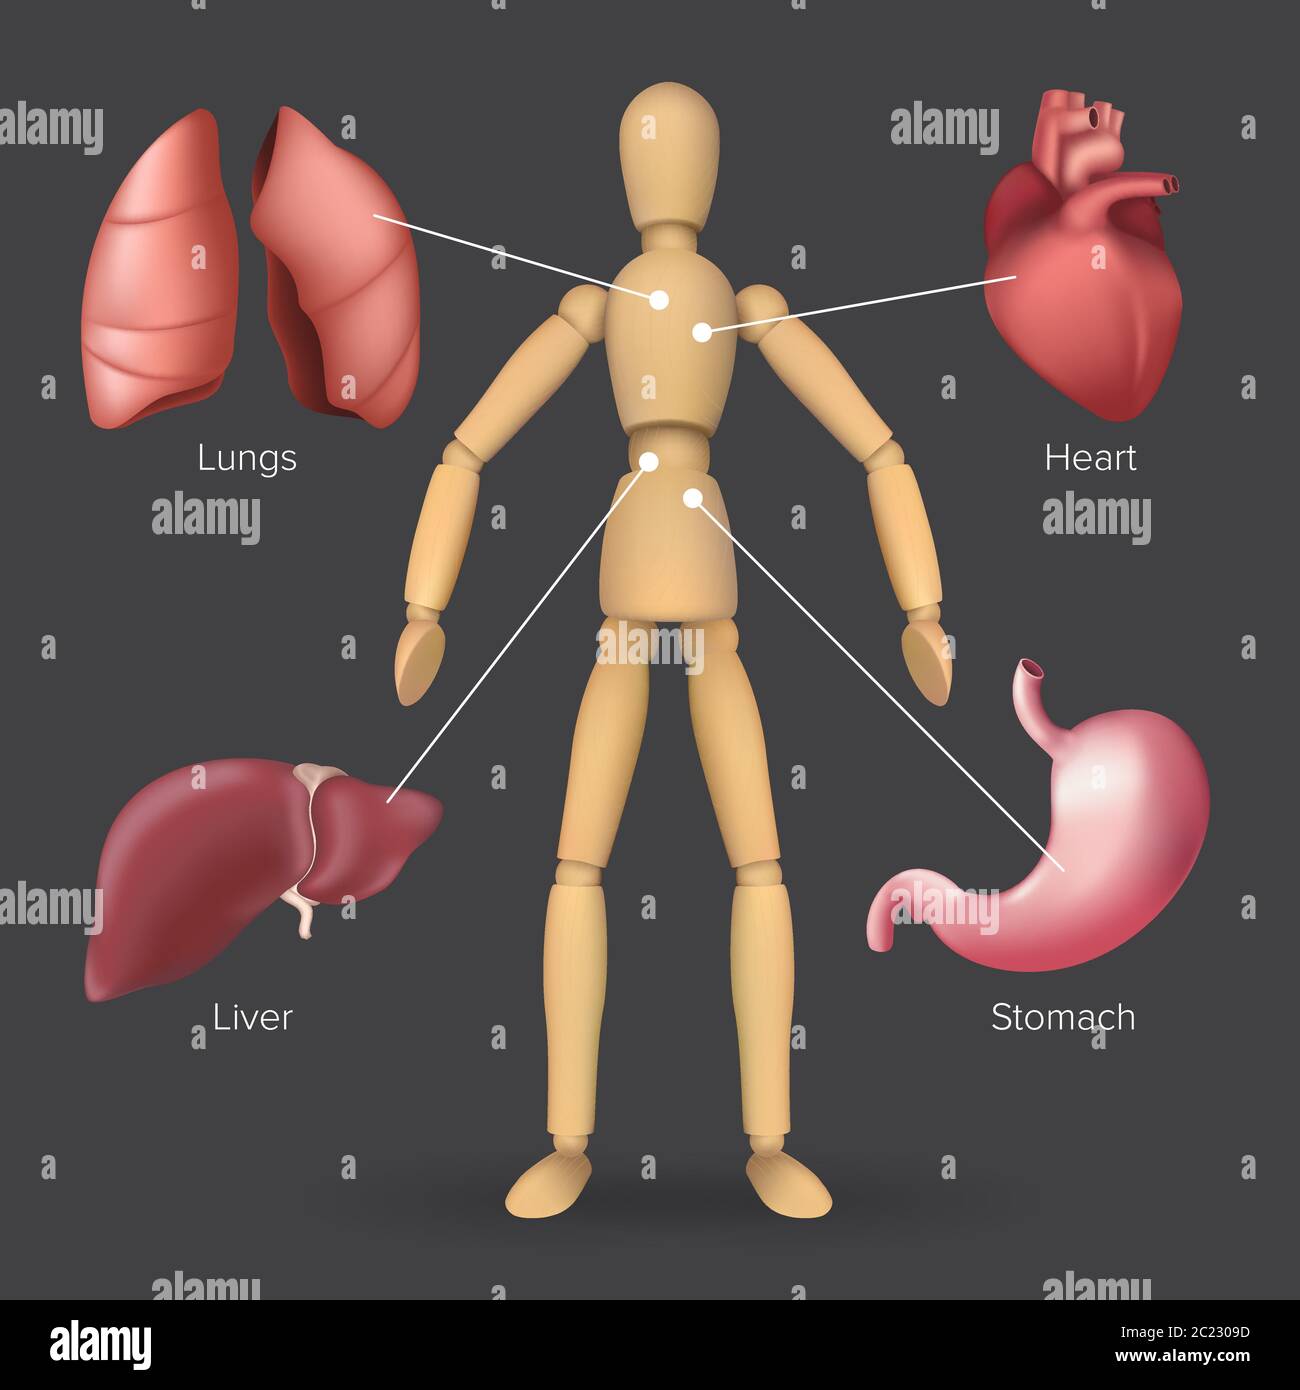 Infographie avec les organes internes humains : cœur, estomac, foie, poumons placés sur une silhouette de mannequin en bois mâle ou femelle. Illustration vectorielle de bo Illustration de Vecteur